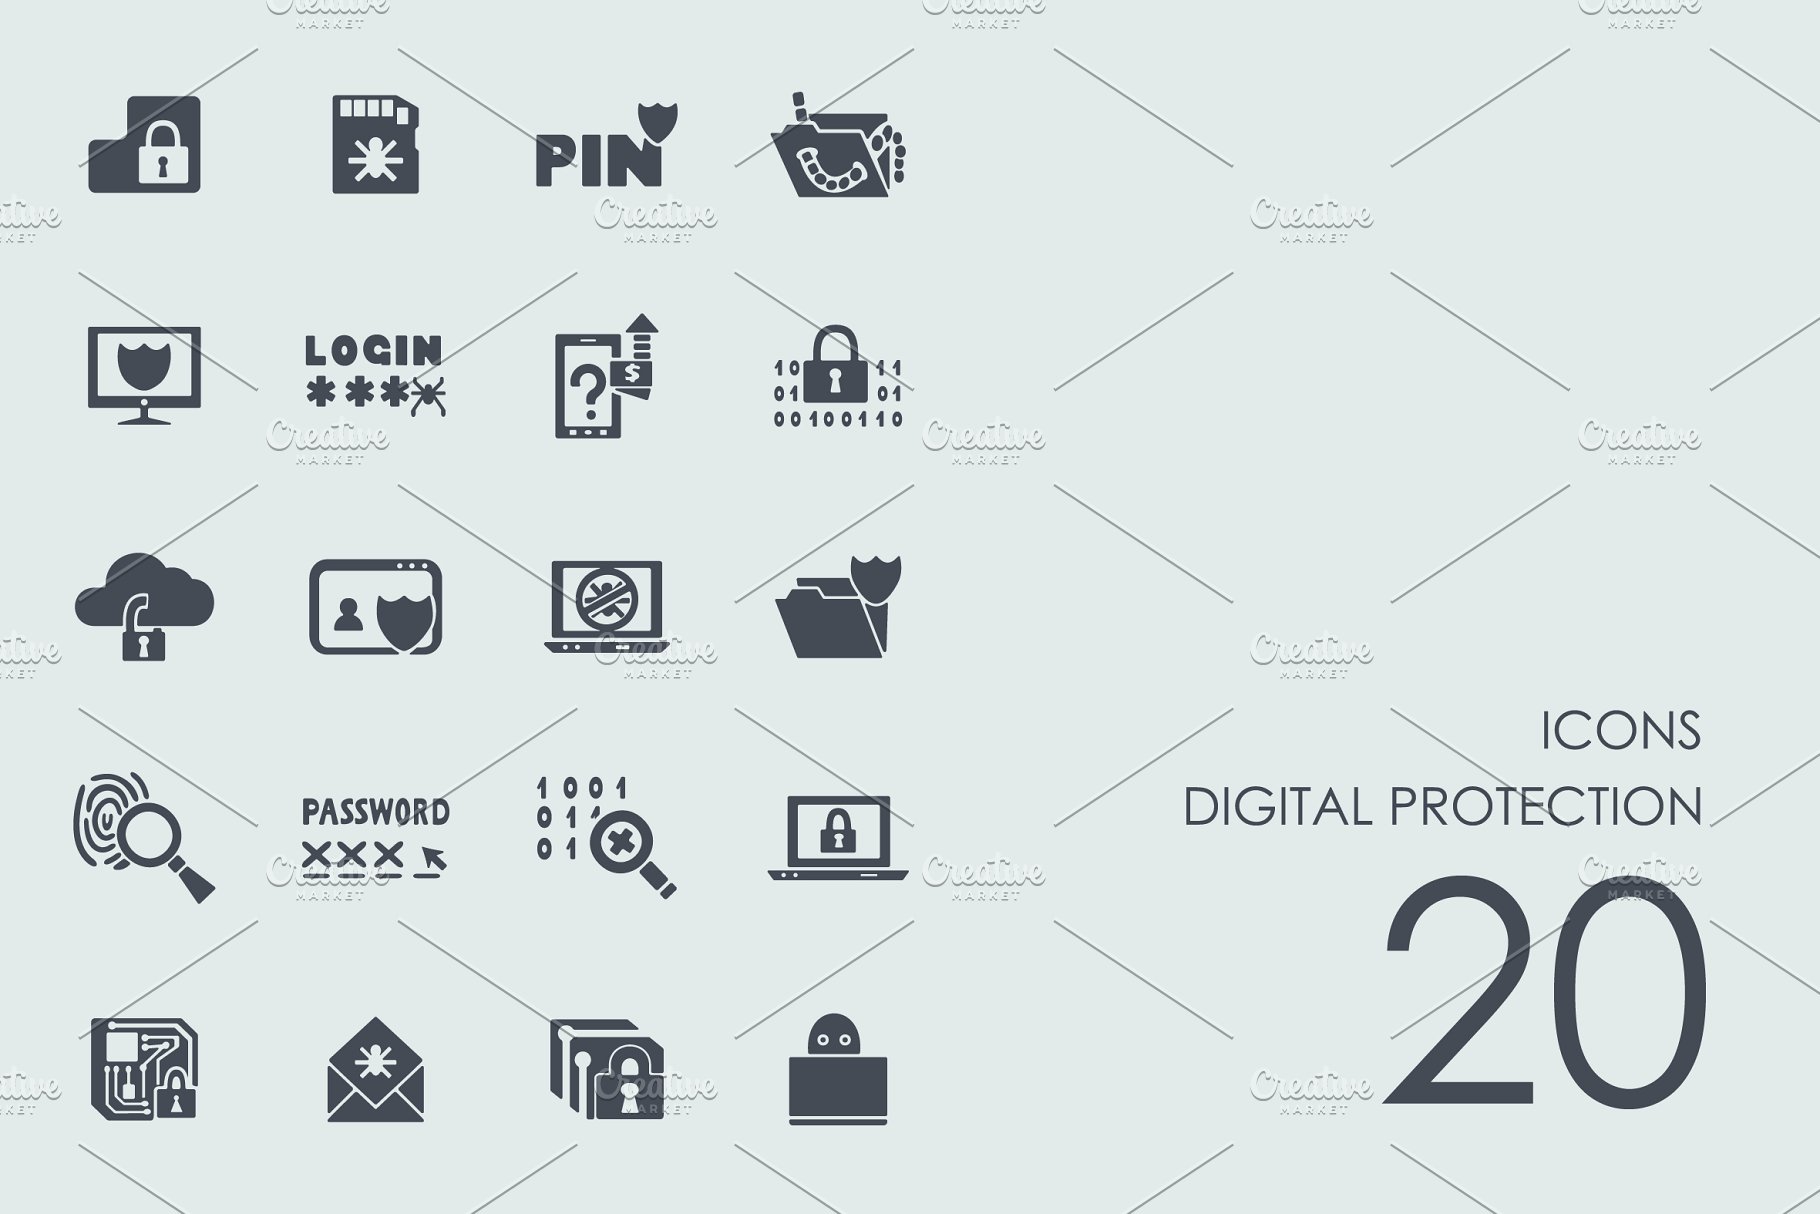 信息数据保护主题简笔画图标合集 Digital protec